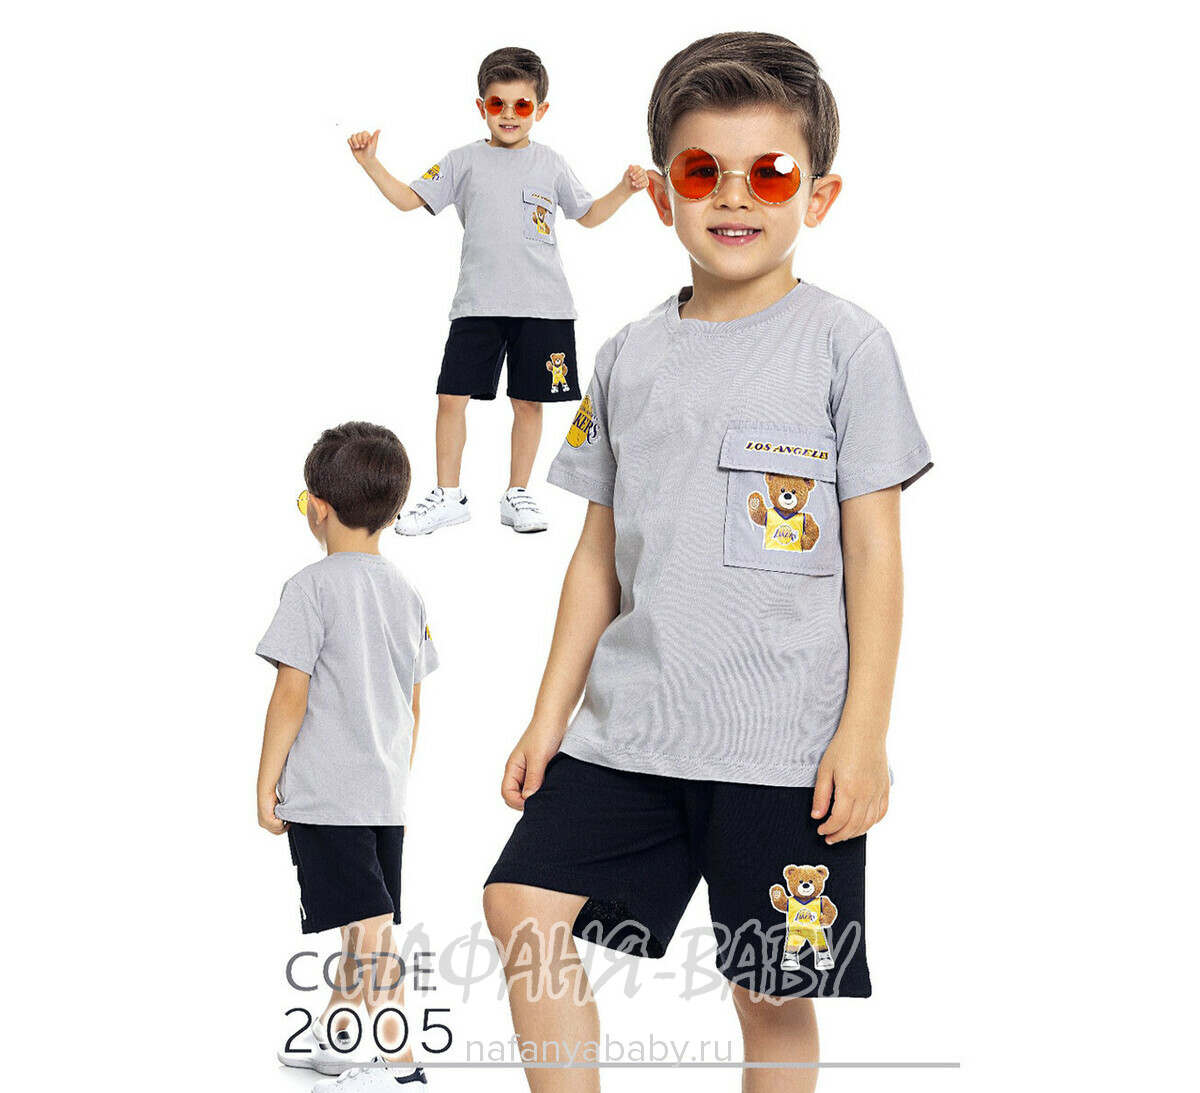 Костюм (футболка+шорты) TK арт: 2005, 1-4 года, 5-9 лет, цвет желтый, оптом Турция